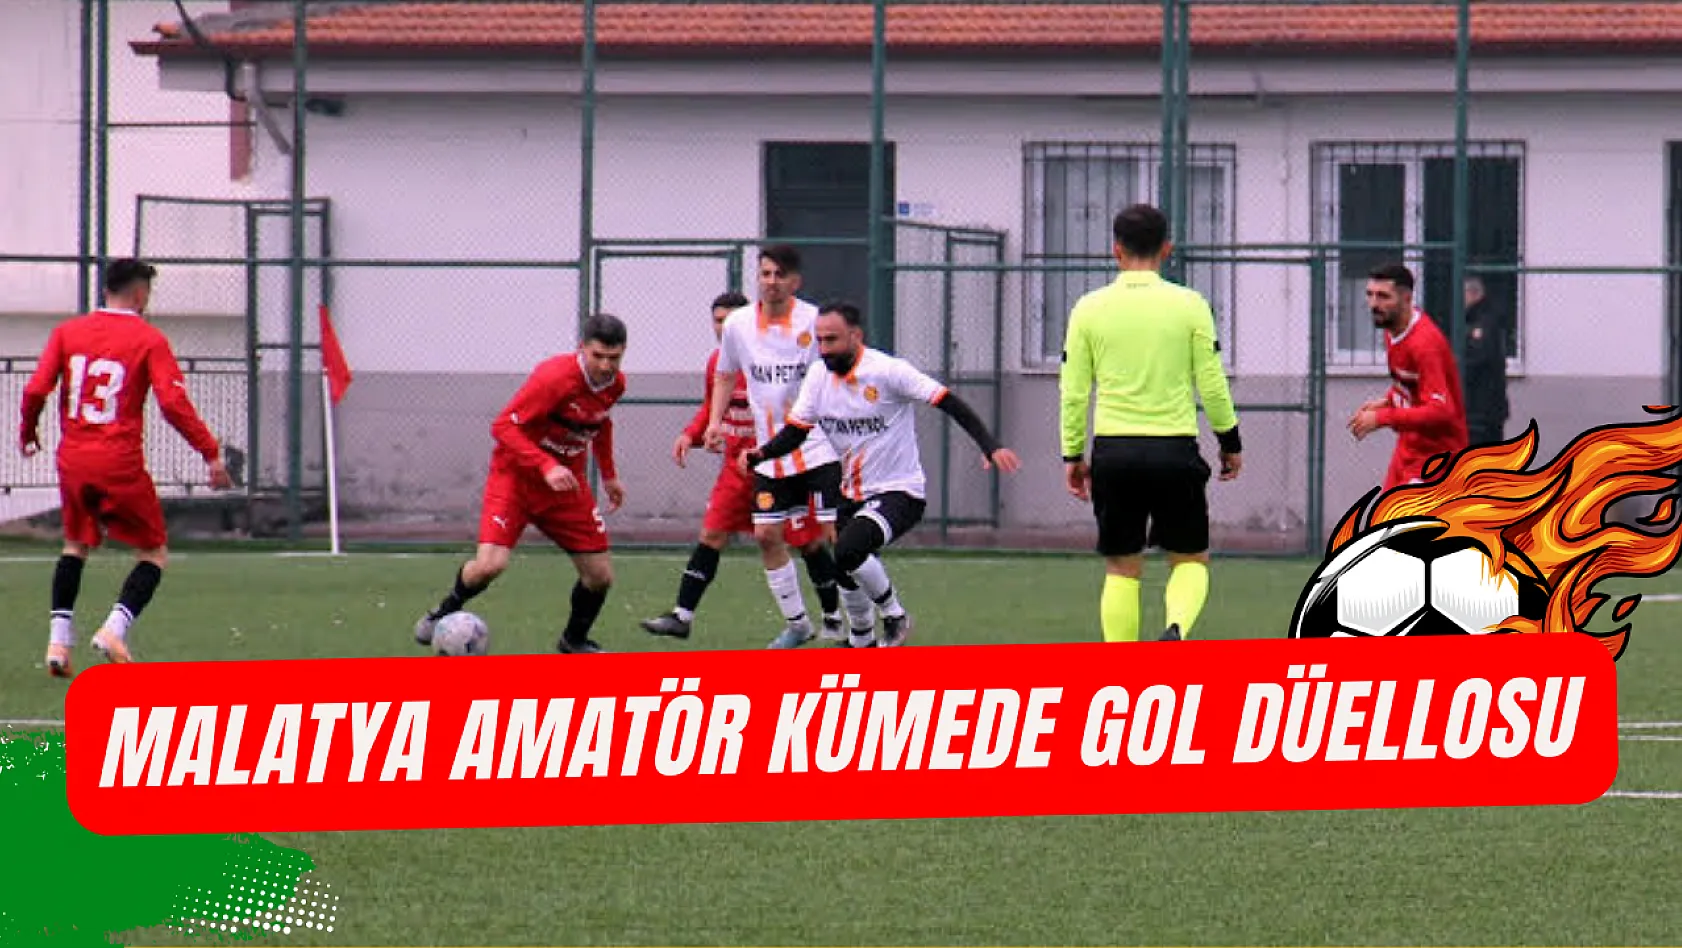 Malatya amatör kümede gol düellosu